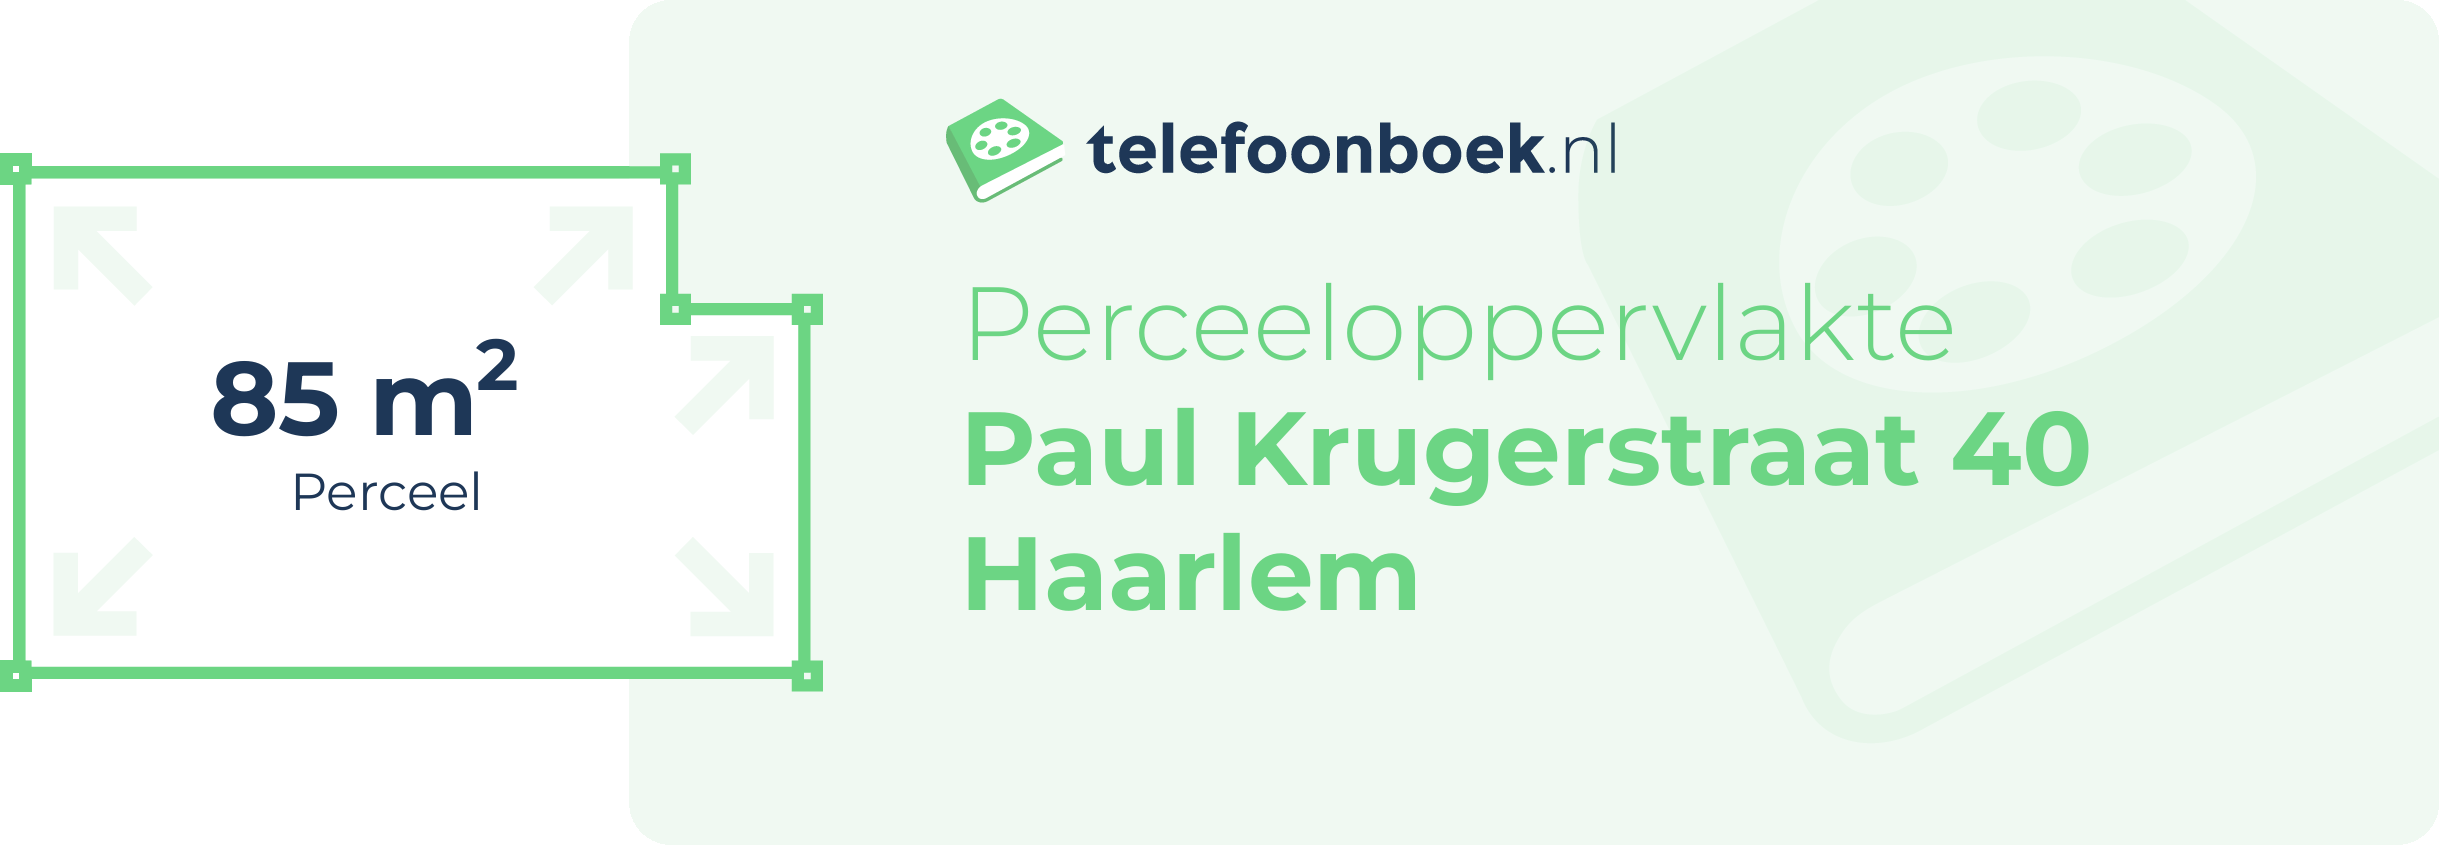 Perceeloppervlakte Paul Krugerstraat 40 Haarlem